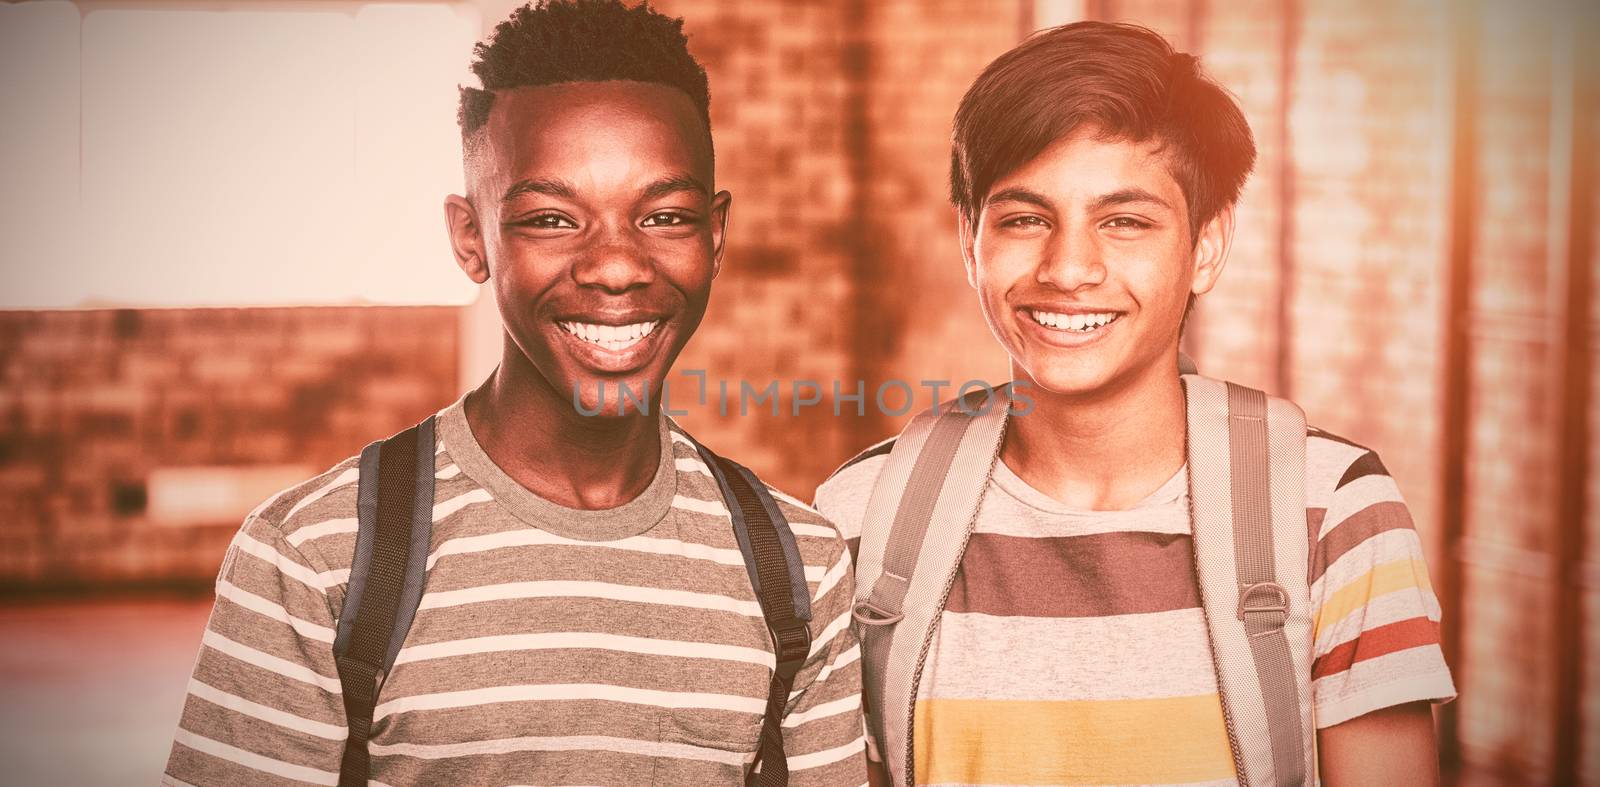 Portrait of happy schoolboys with schoolbag standing in campus at school